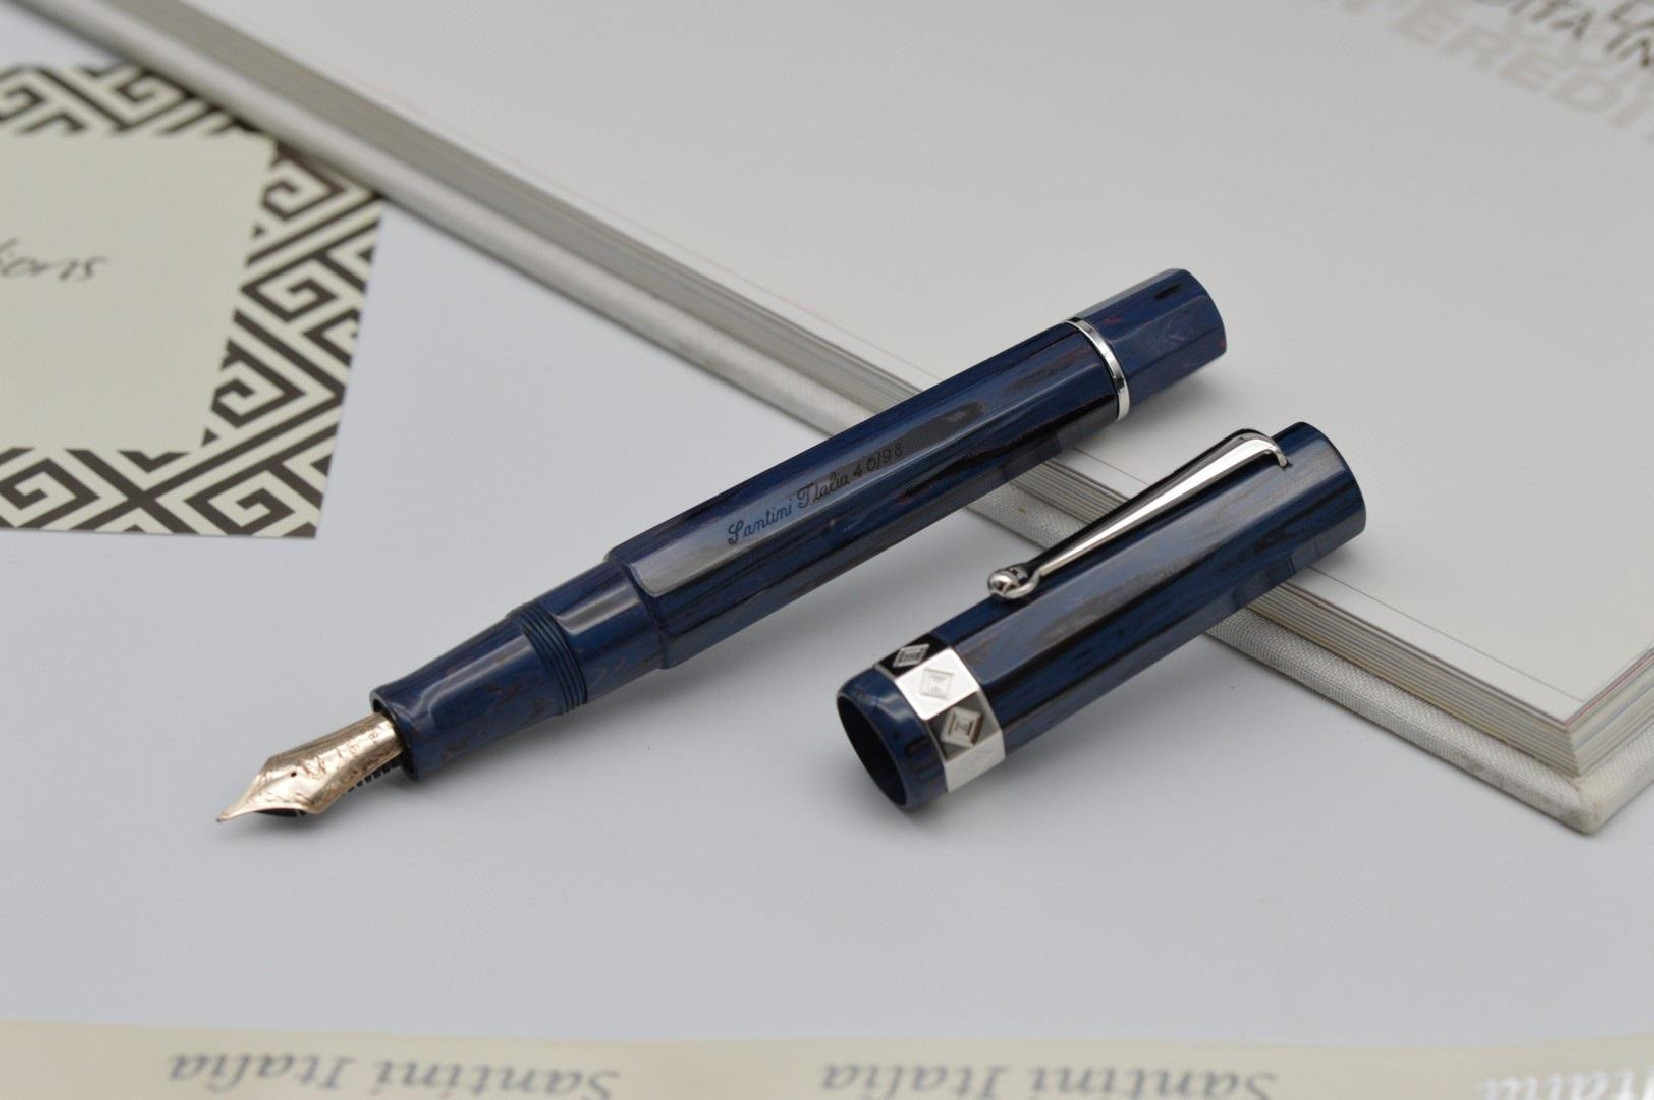 Santini Nonagon Midnight Silver limited edition fountain pen